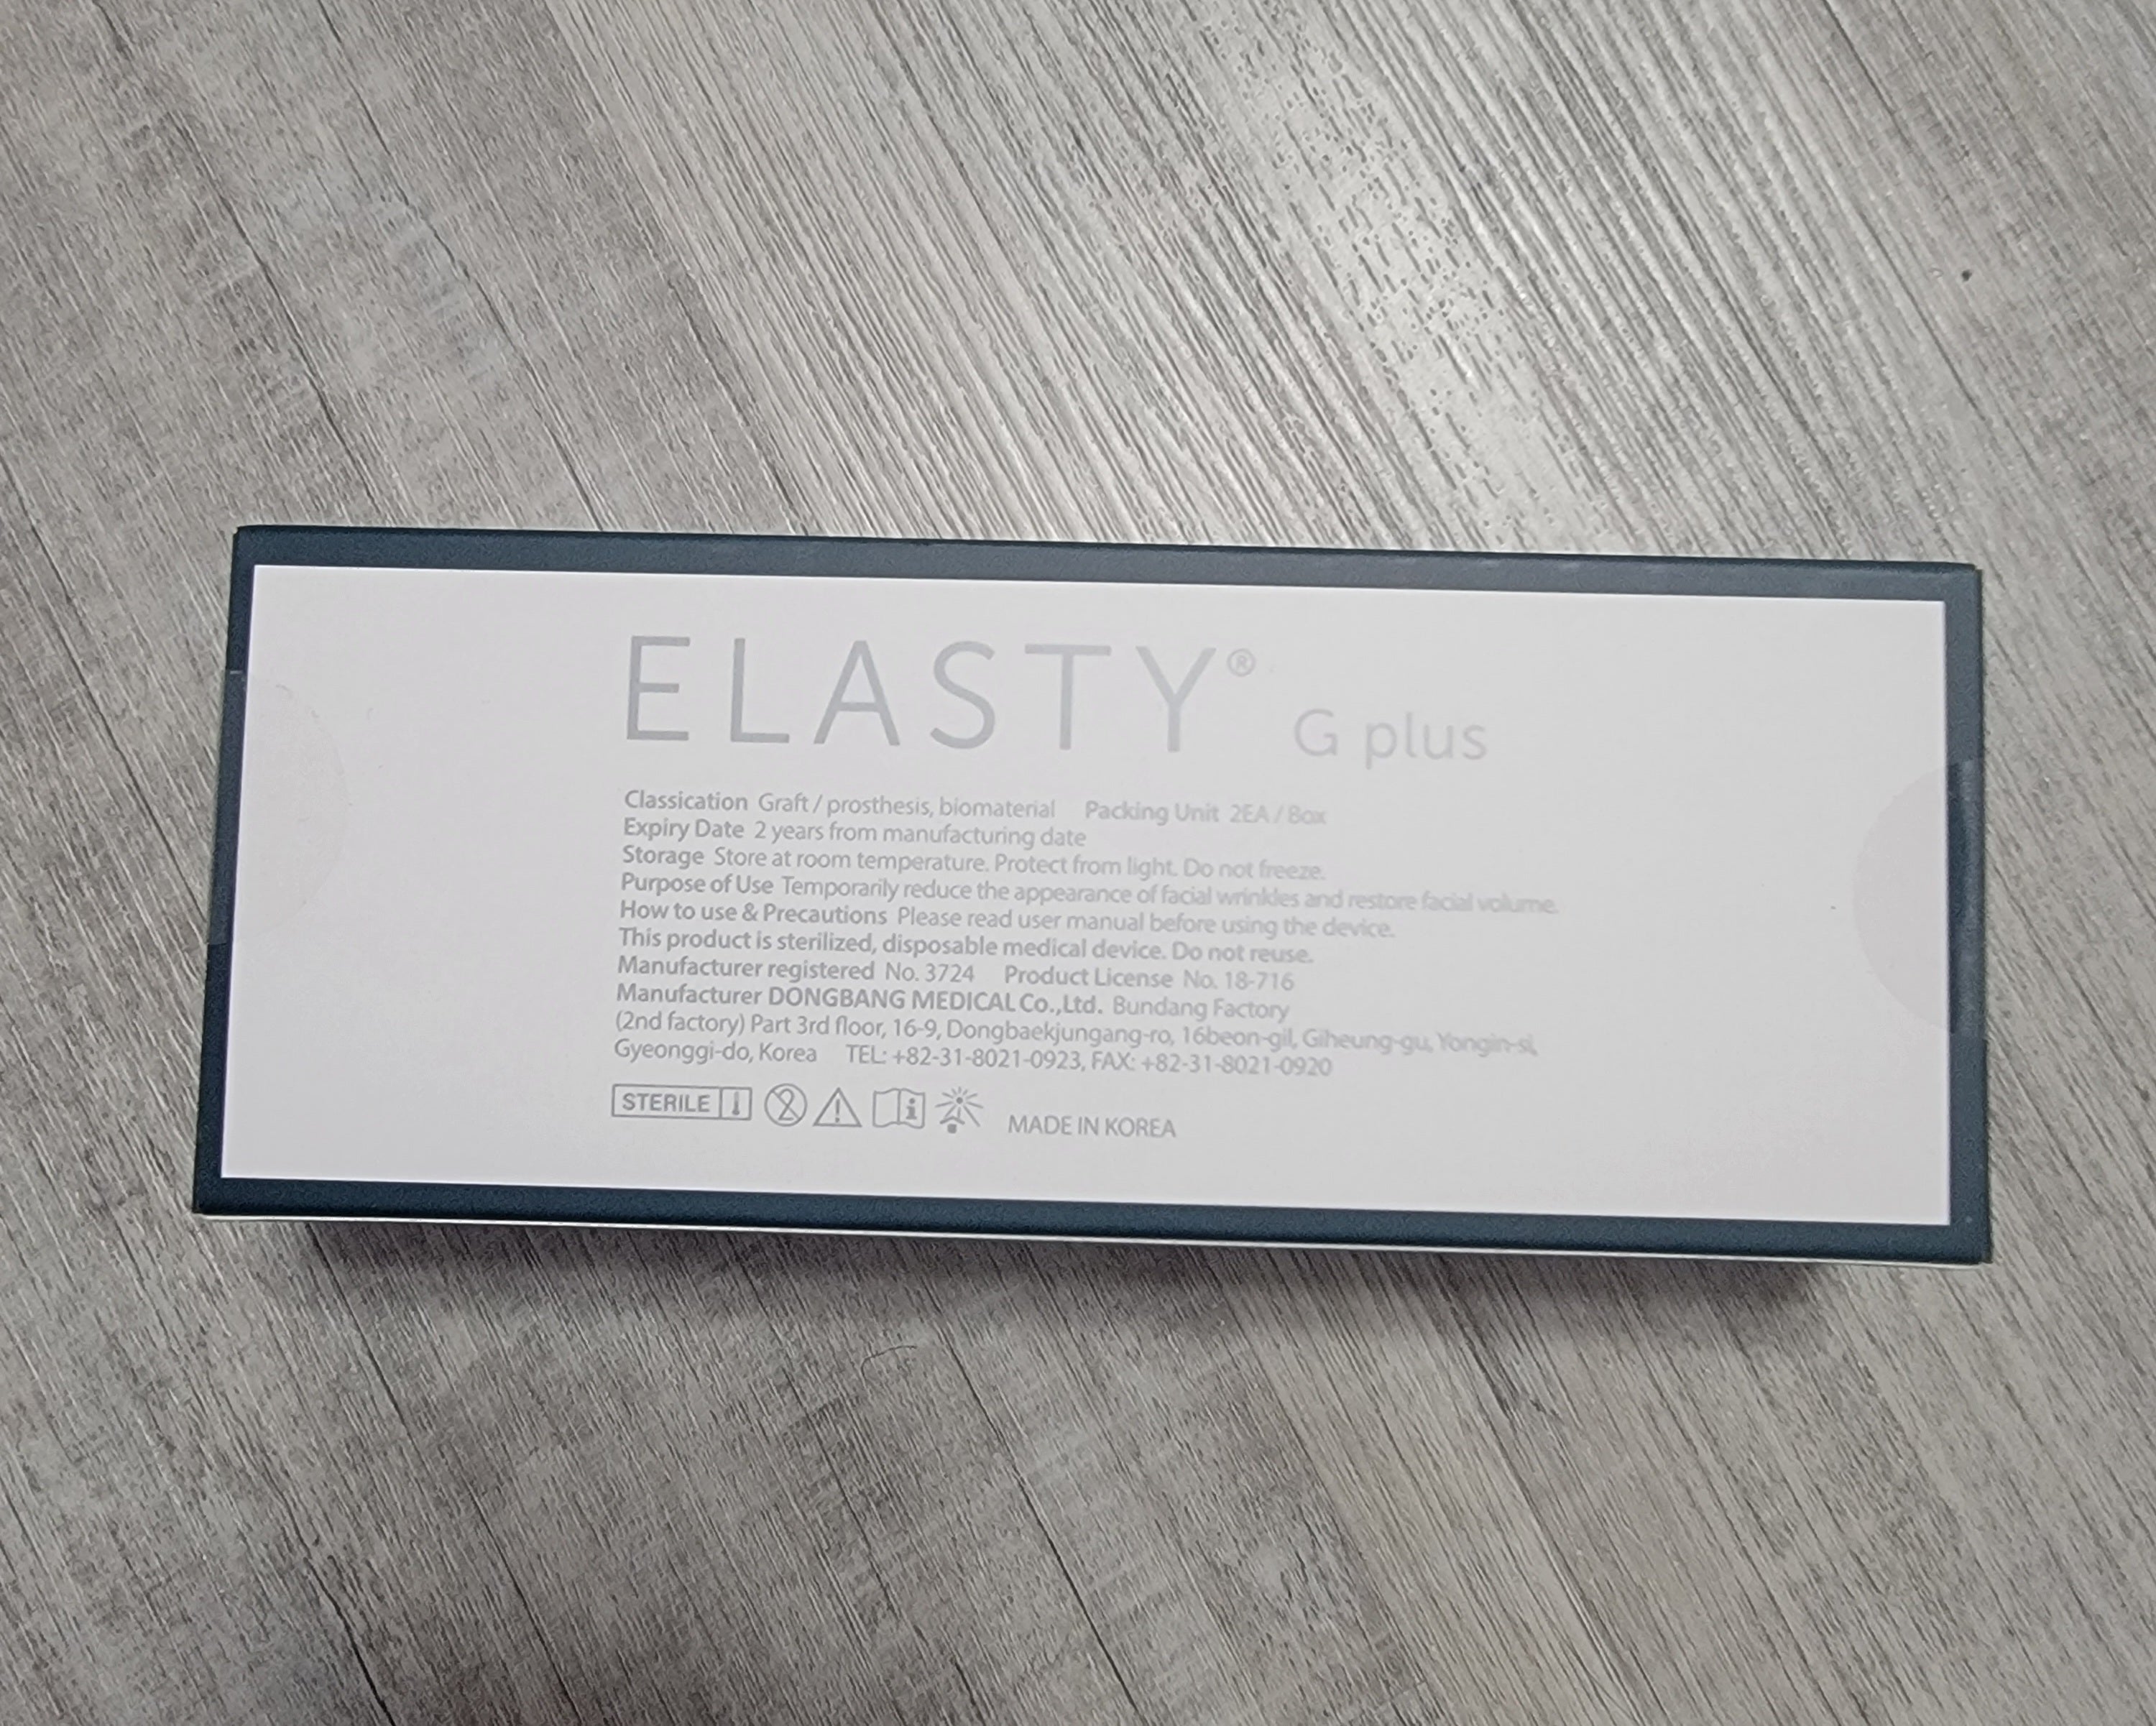 Elasty Grand Plus 2mls